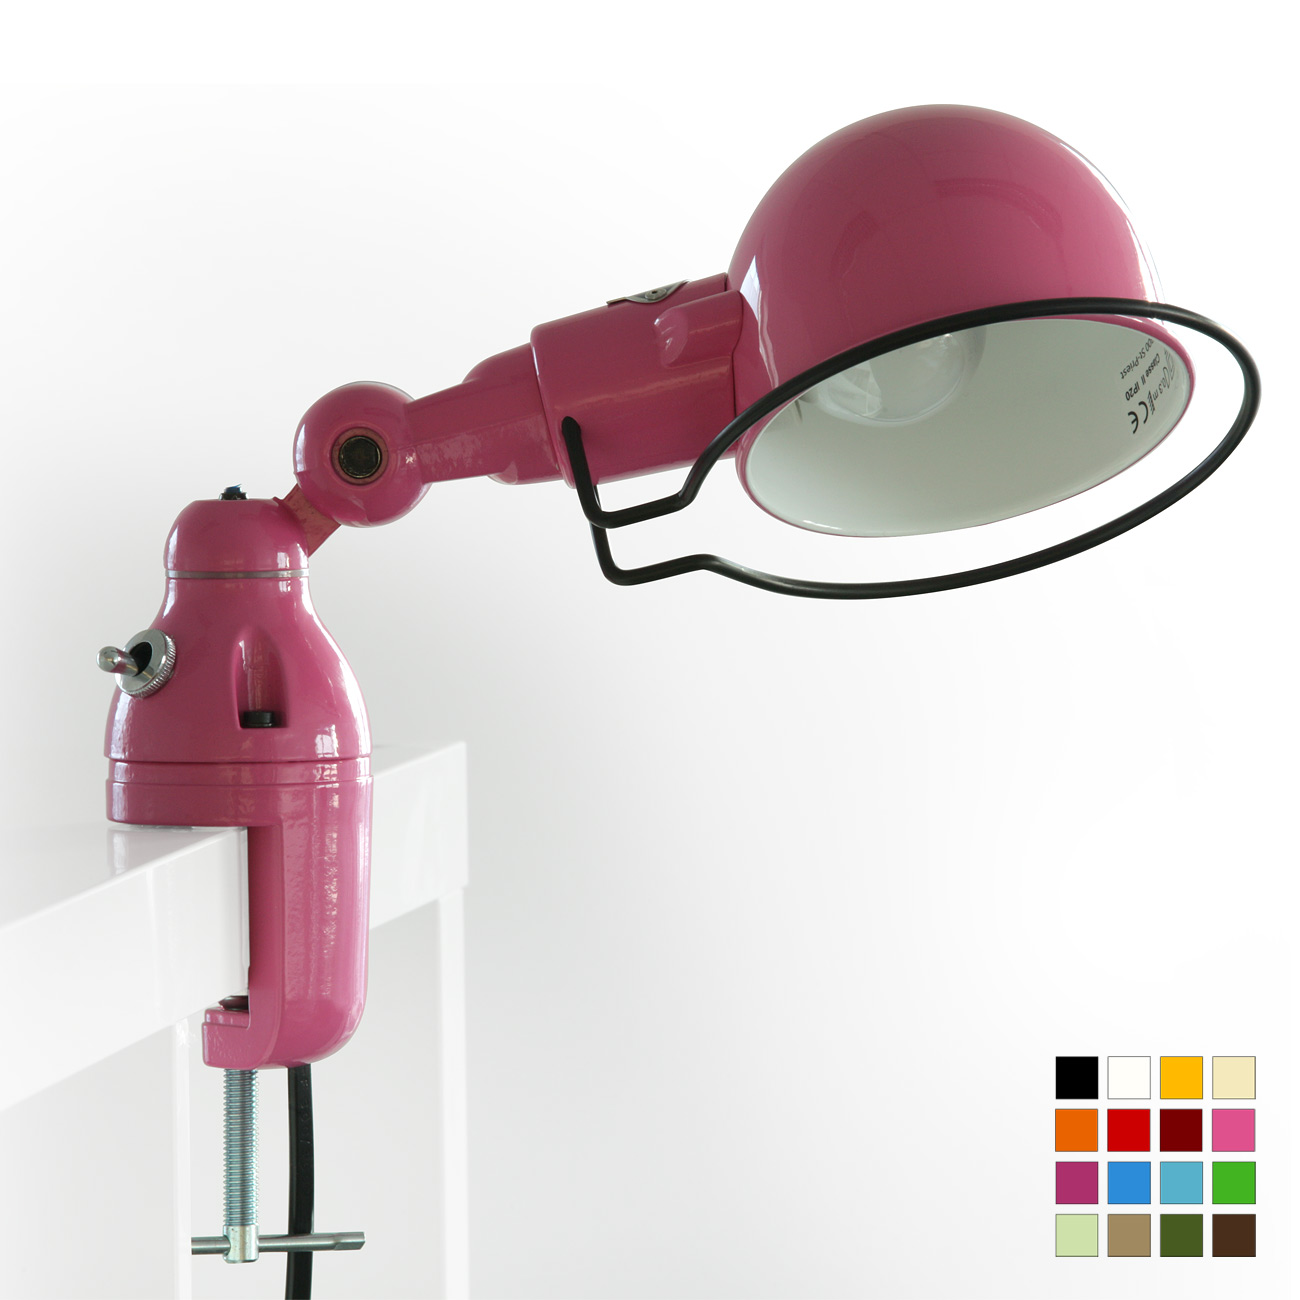 Kleine kurze Klemm-Leuchte SIGNAL SI302 für Regale: SIGNAL SI302: eine kurze Klemm-Lampe für Regale bis 40 mm, hier lackiert in RAL 4003 Erikaviolett glänzend